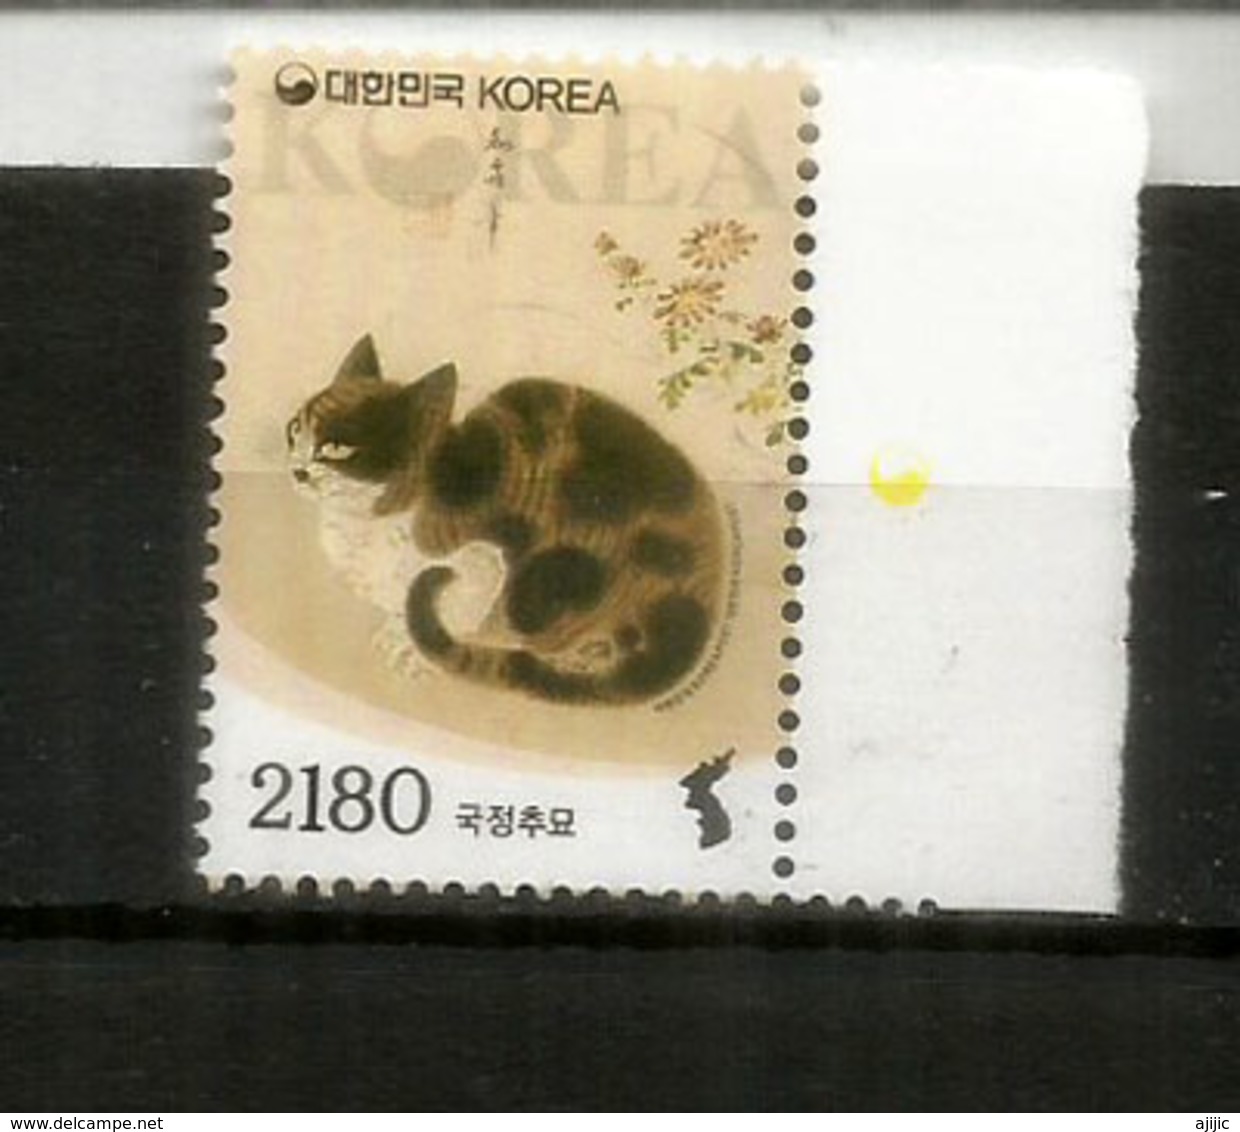 Myokakdo Cat (South Korea) 2019. High Face Value For Registered Letter. Mint / Neuf ** - Katten